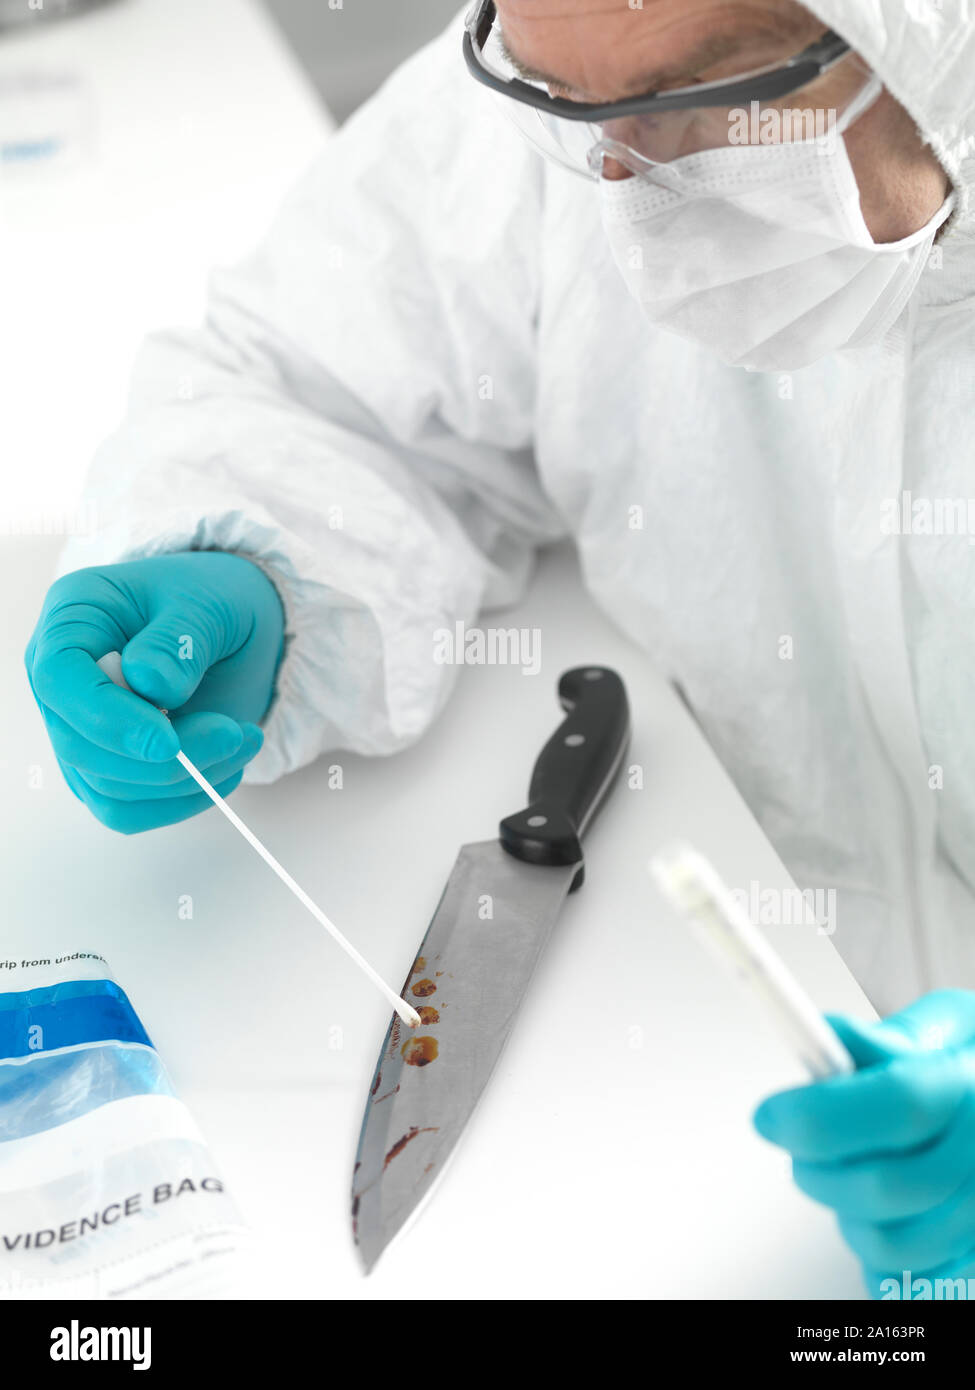 Científico Forense, tomando pruebas de ADN a partir de una navaja manchada de sangre Foto de stock